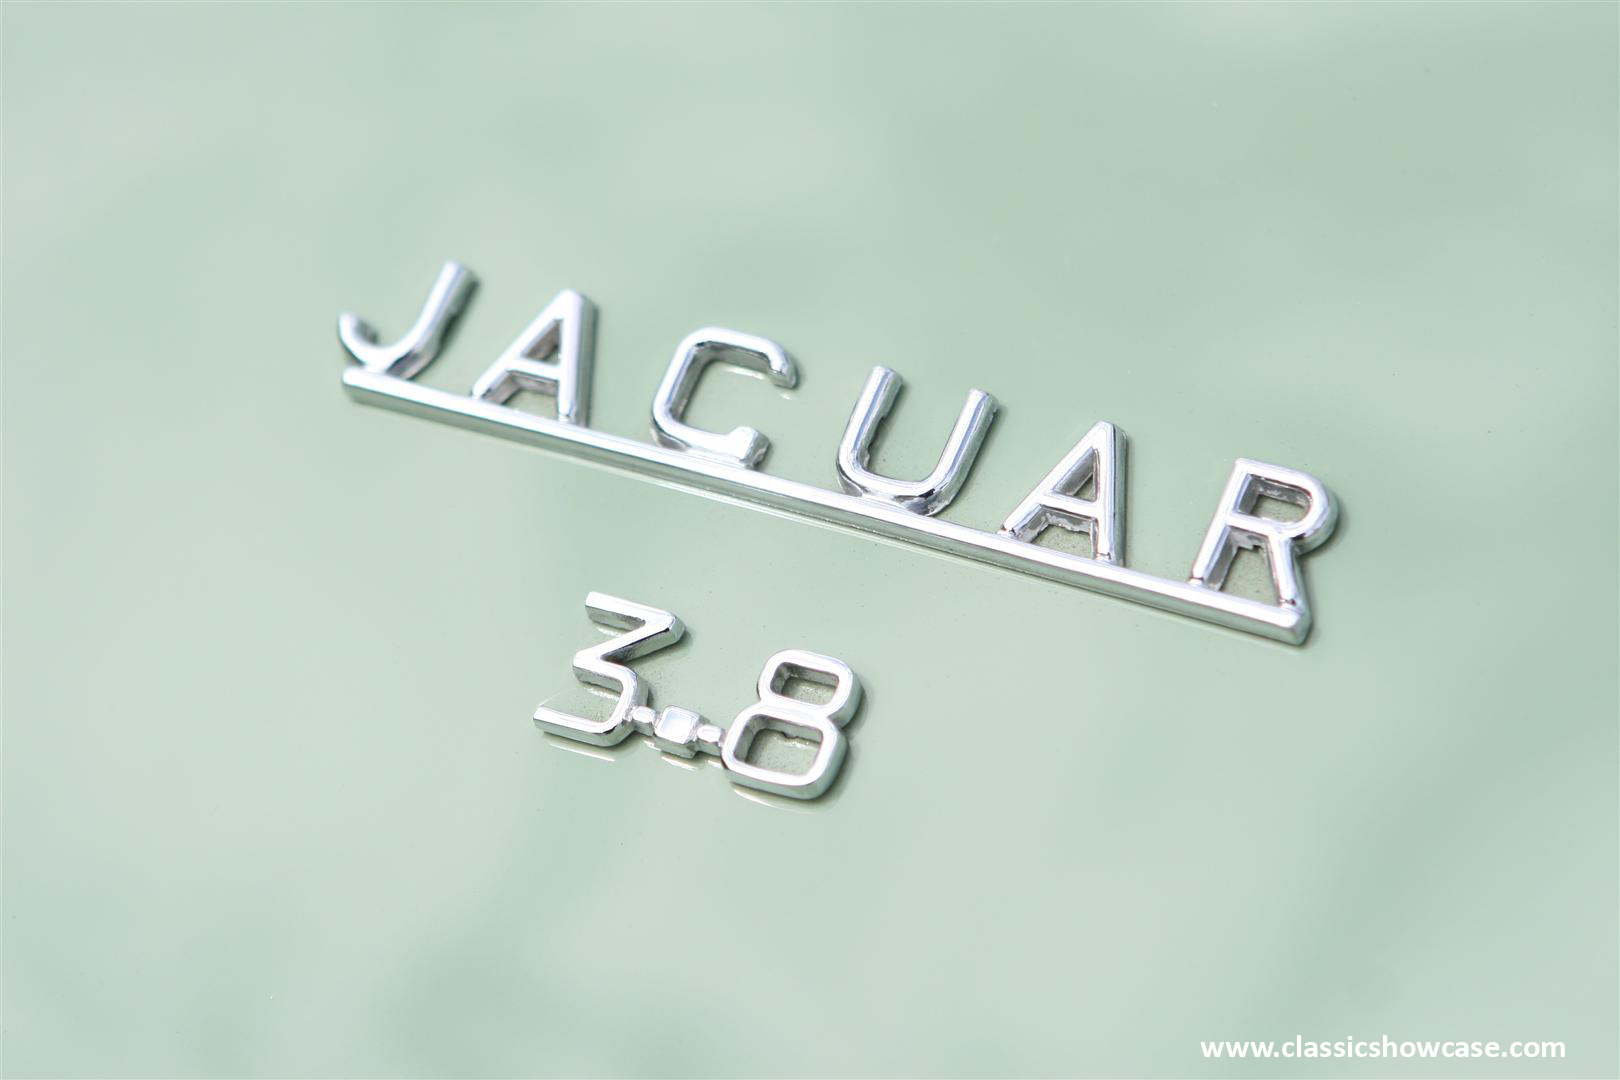 1961 Jaguar Mark II 3.8 Sedan